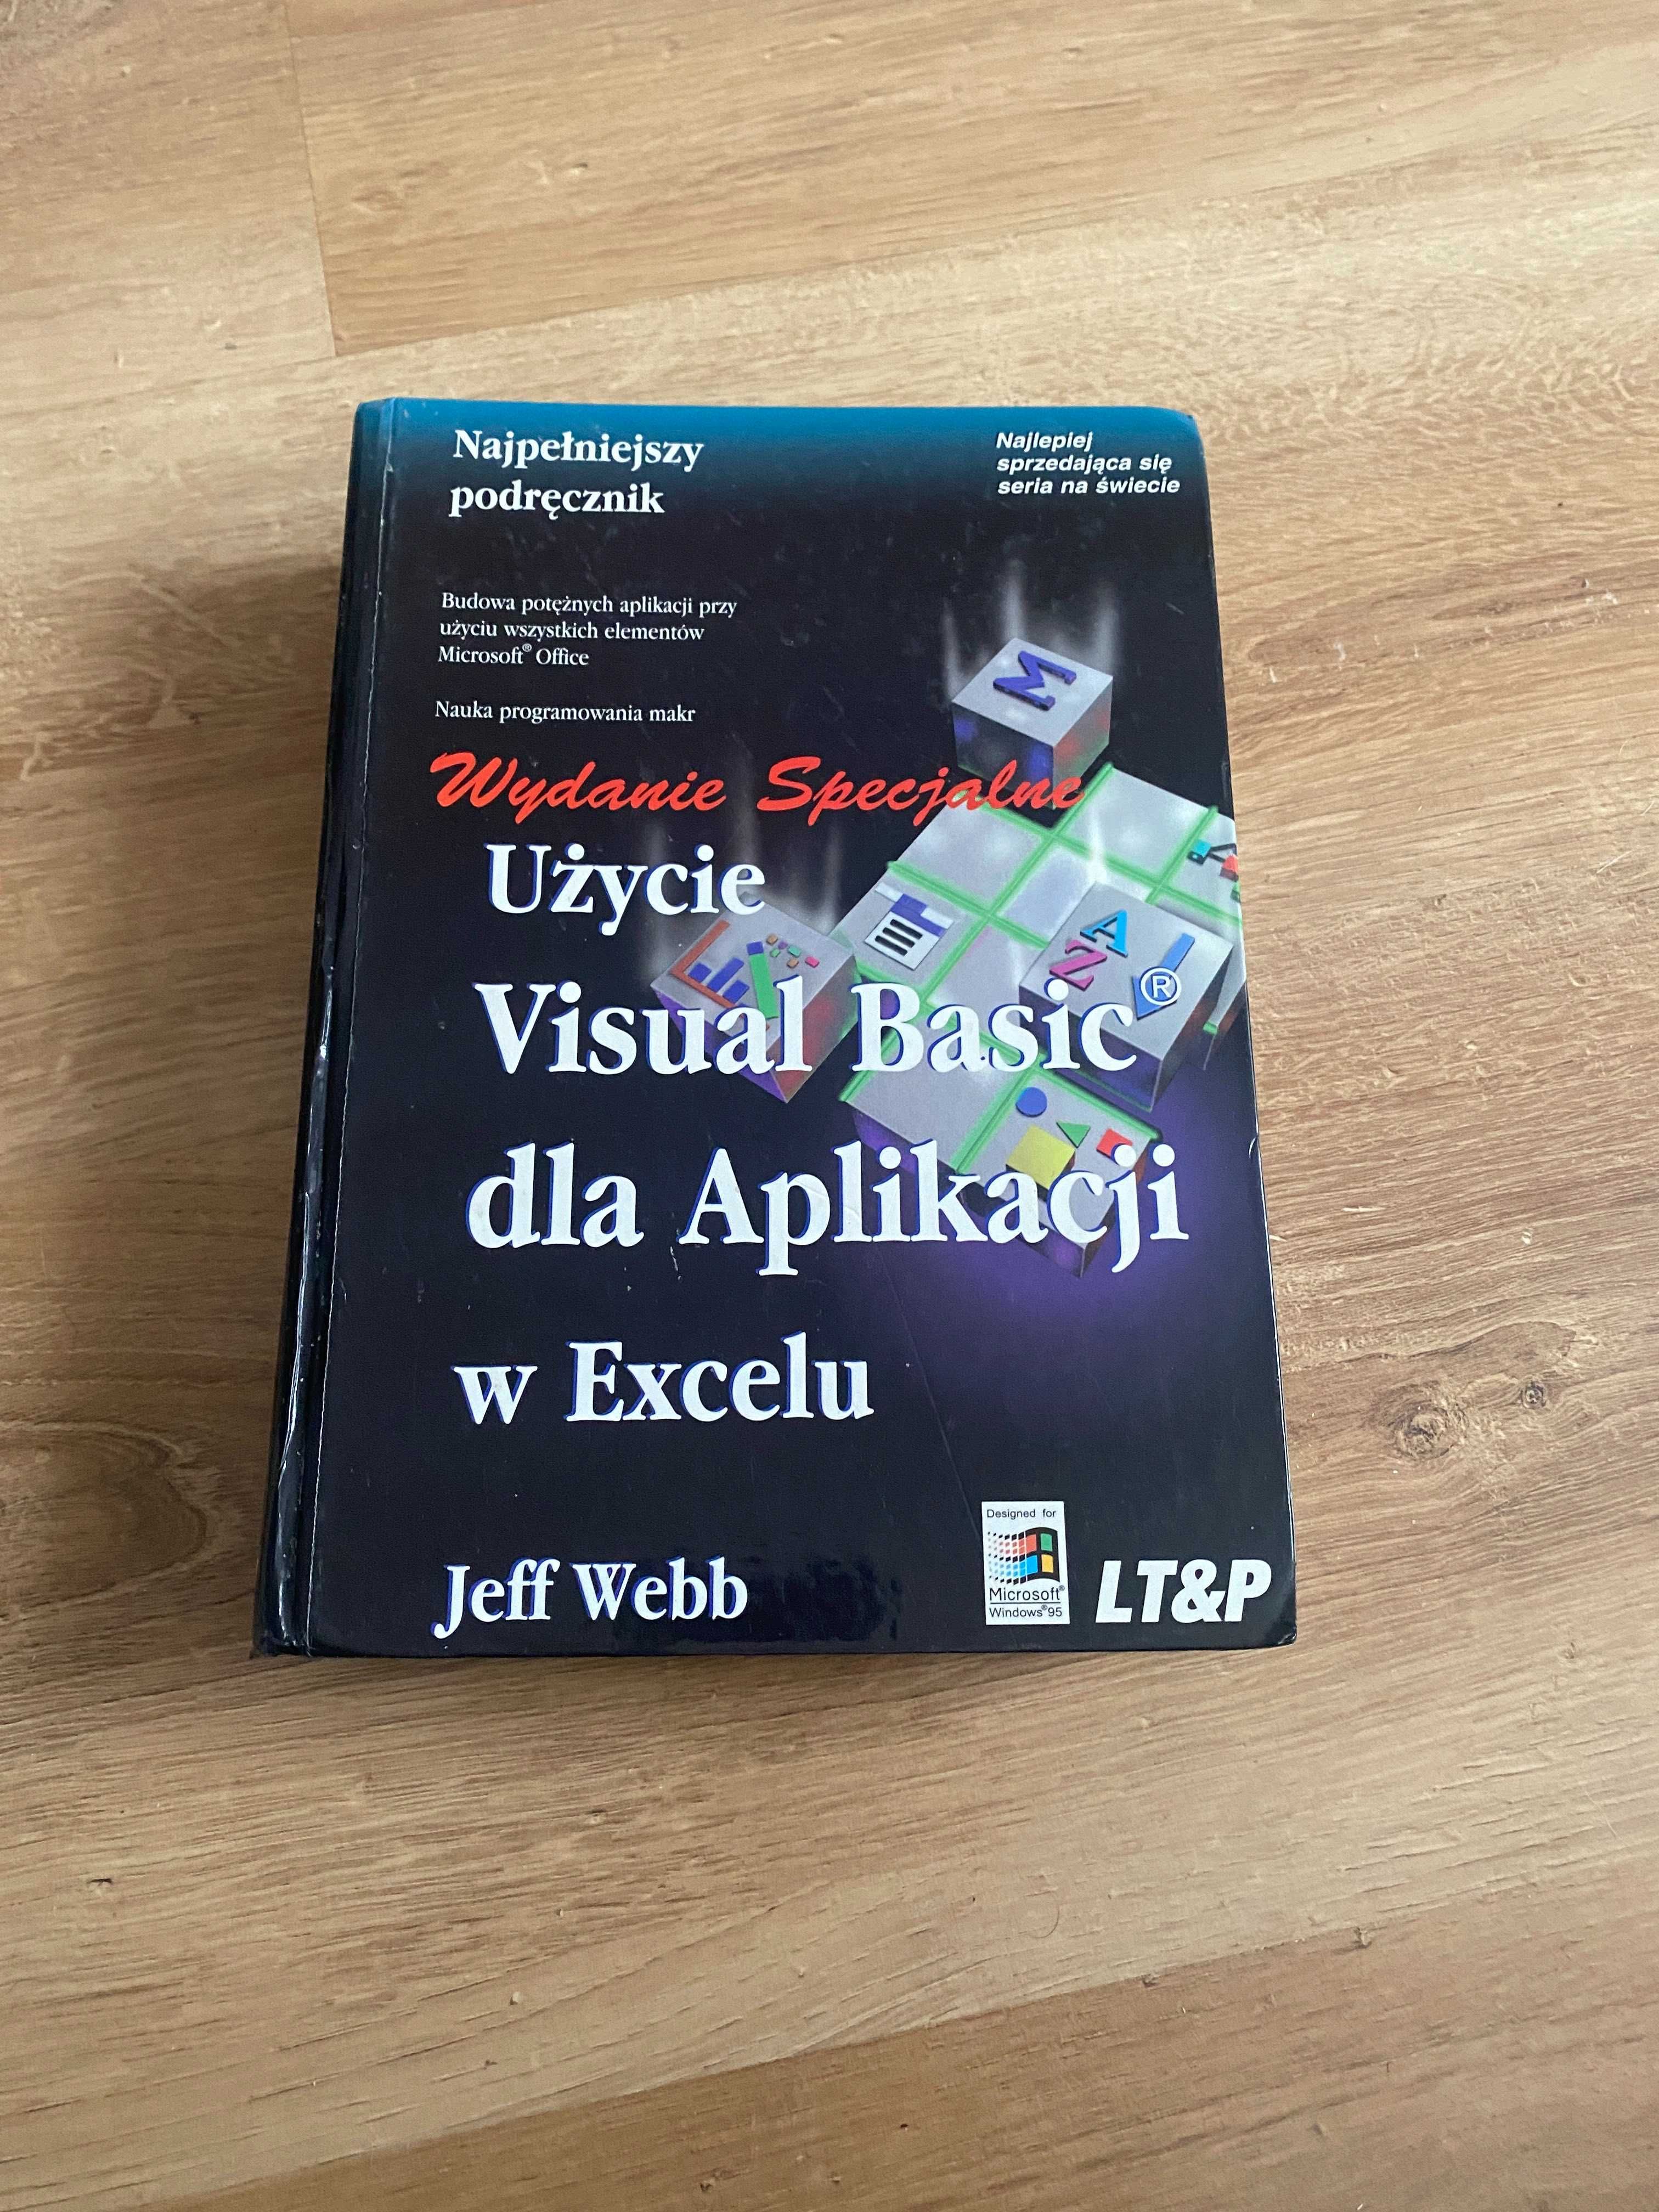 Jeff Webb - Użycie Visual Basica dla Aplikacji w Excelu